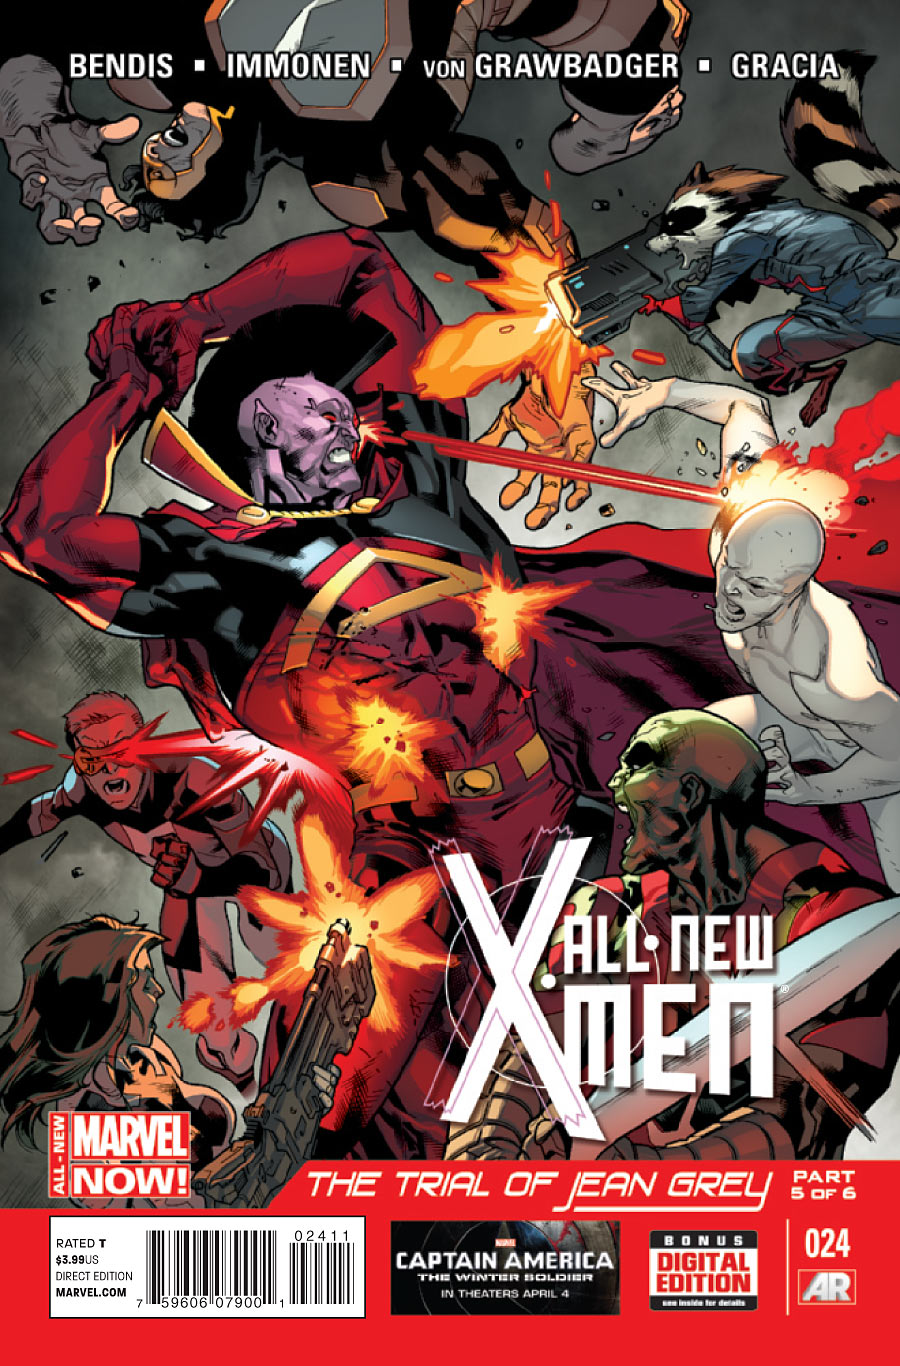 All New X-Men #24